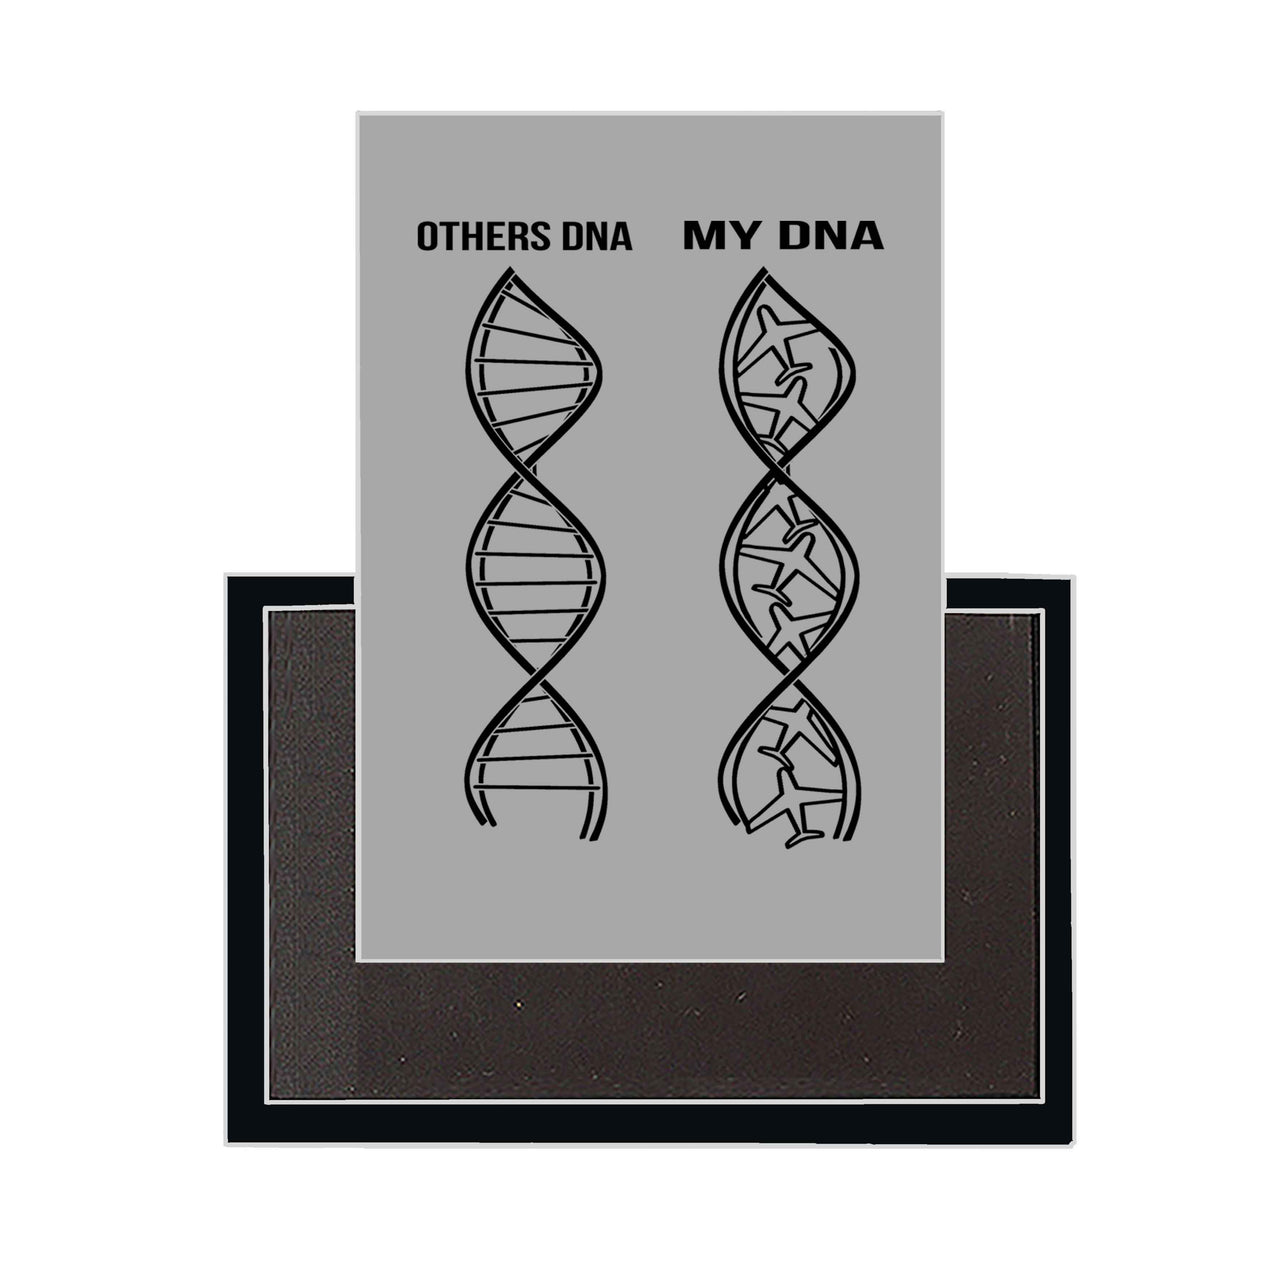 Aviation DNA Designed Magnets